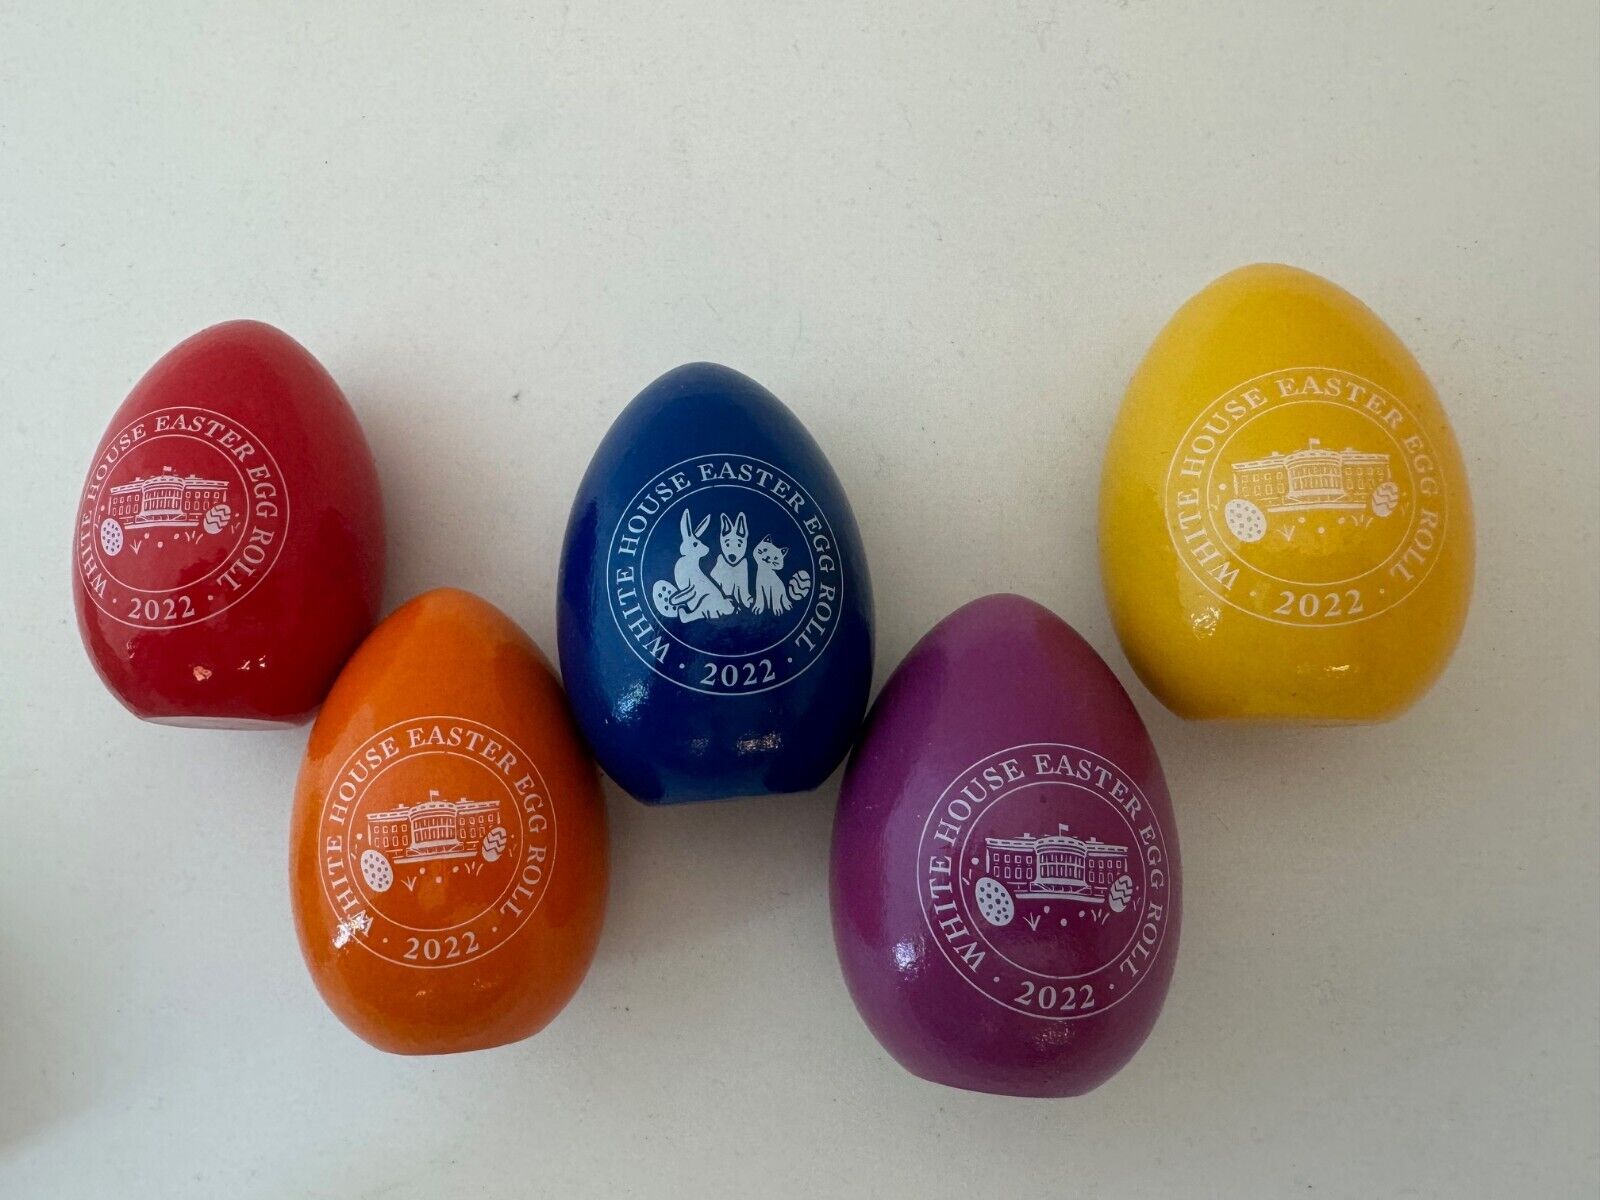 2022 Official Biden White House Easter Egg Roll Wooden RARE Set of 5 Eggs In Box